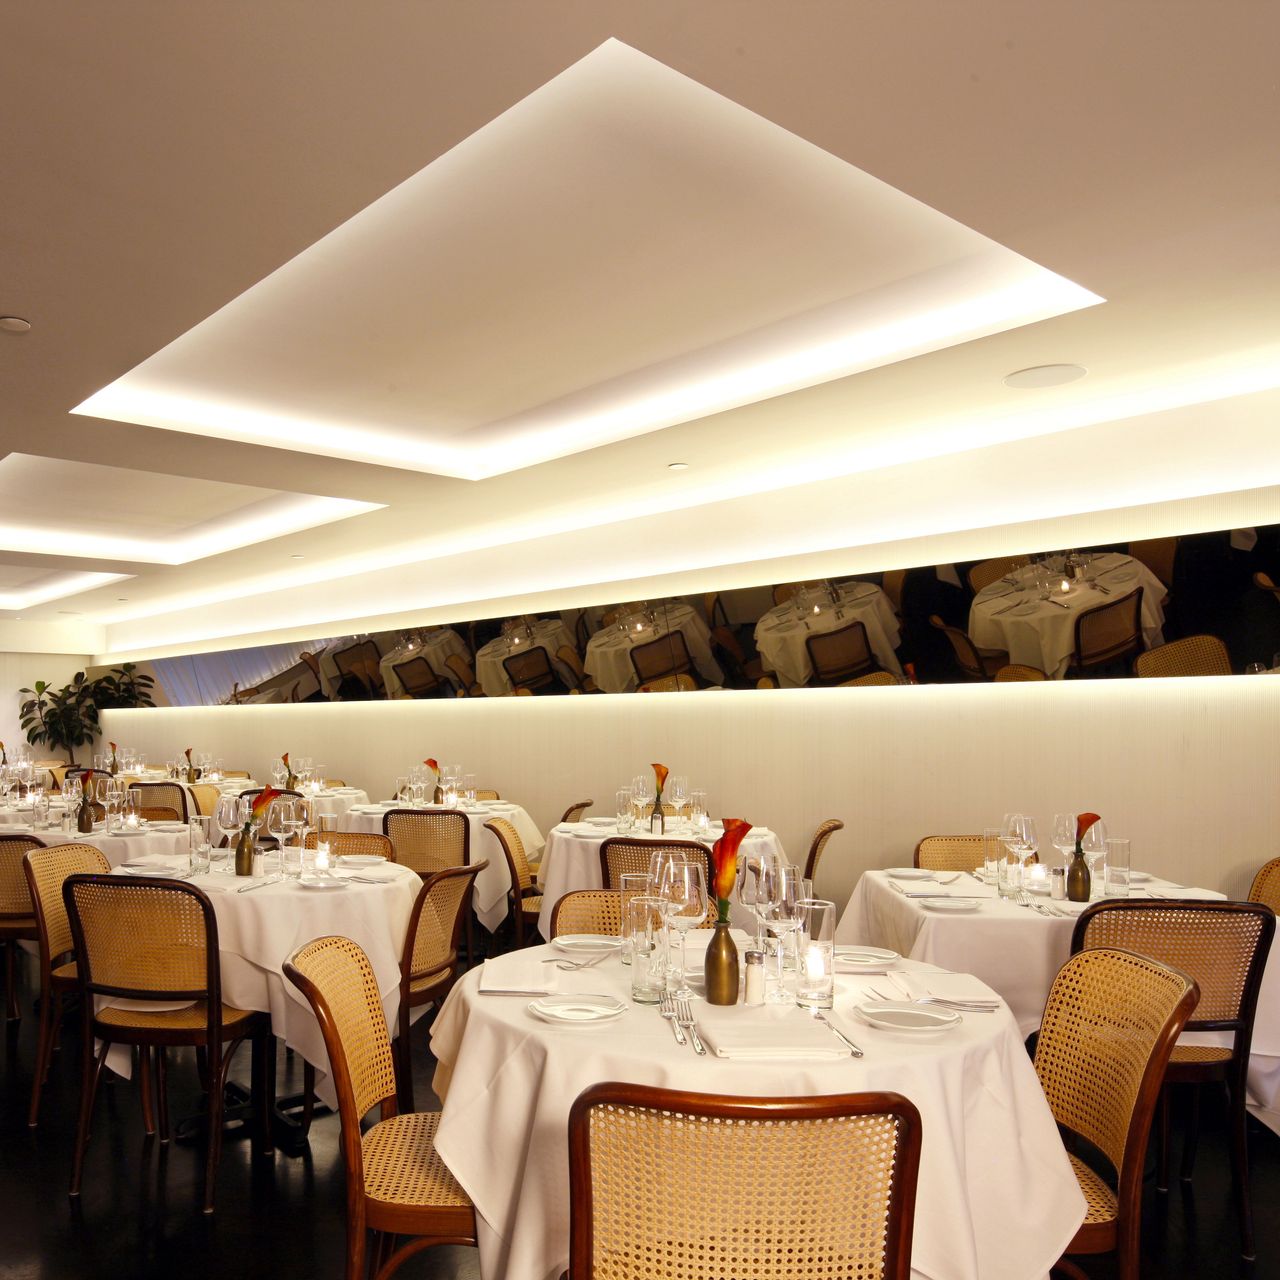 Il Gattopardo Restaurant - New York, NY